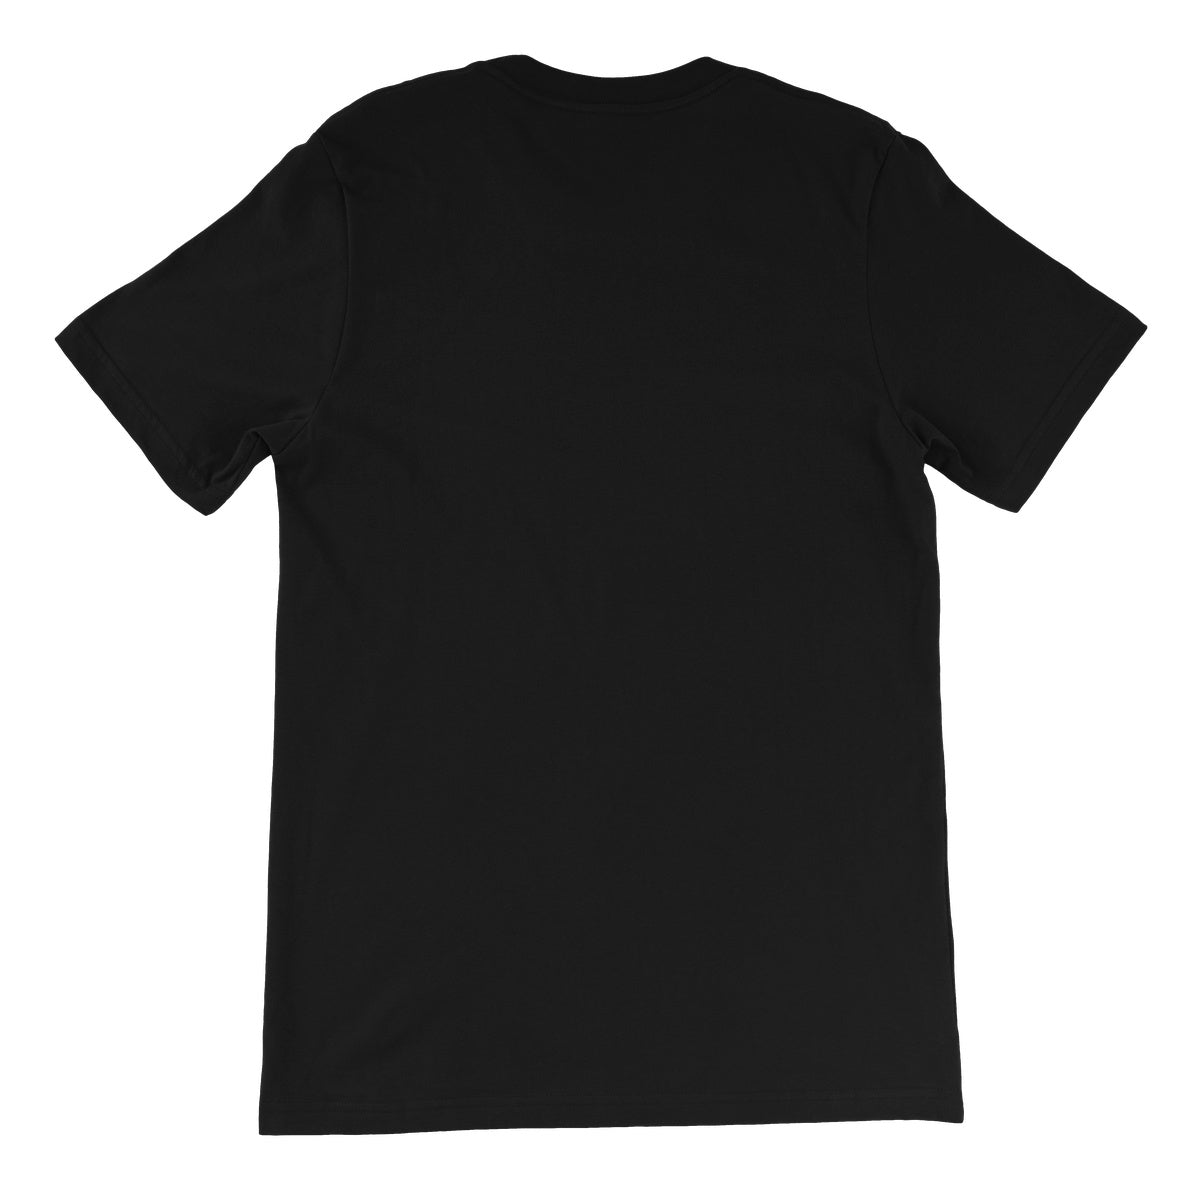 TNT Extreme Wrestling Sirens Fury Unisex Short Sleeve T-Shirt